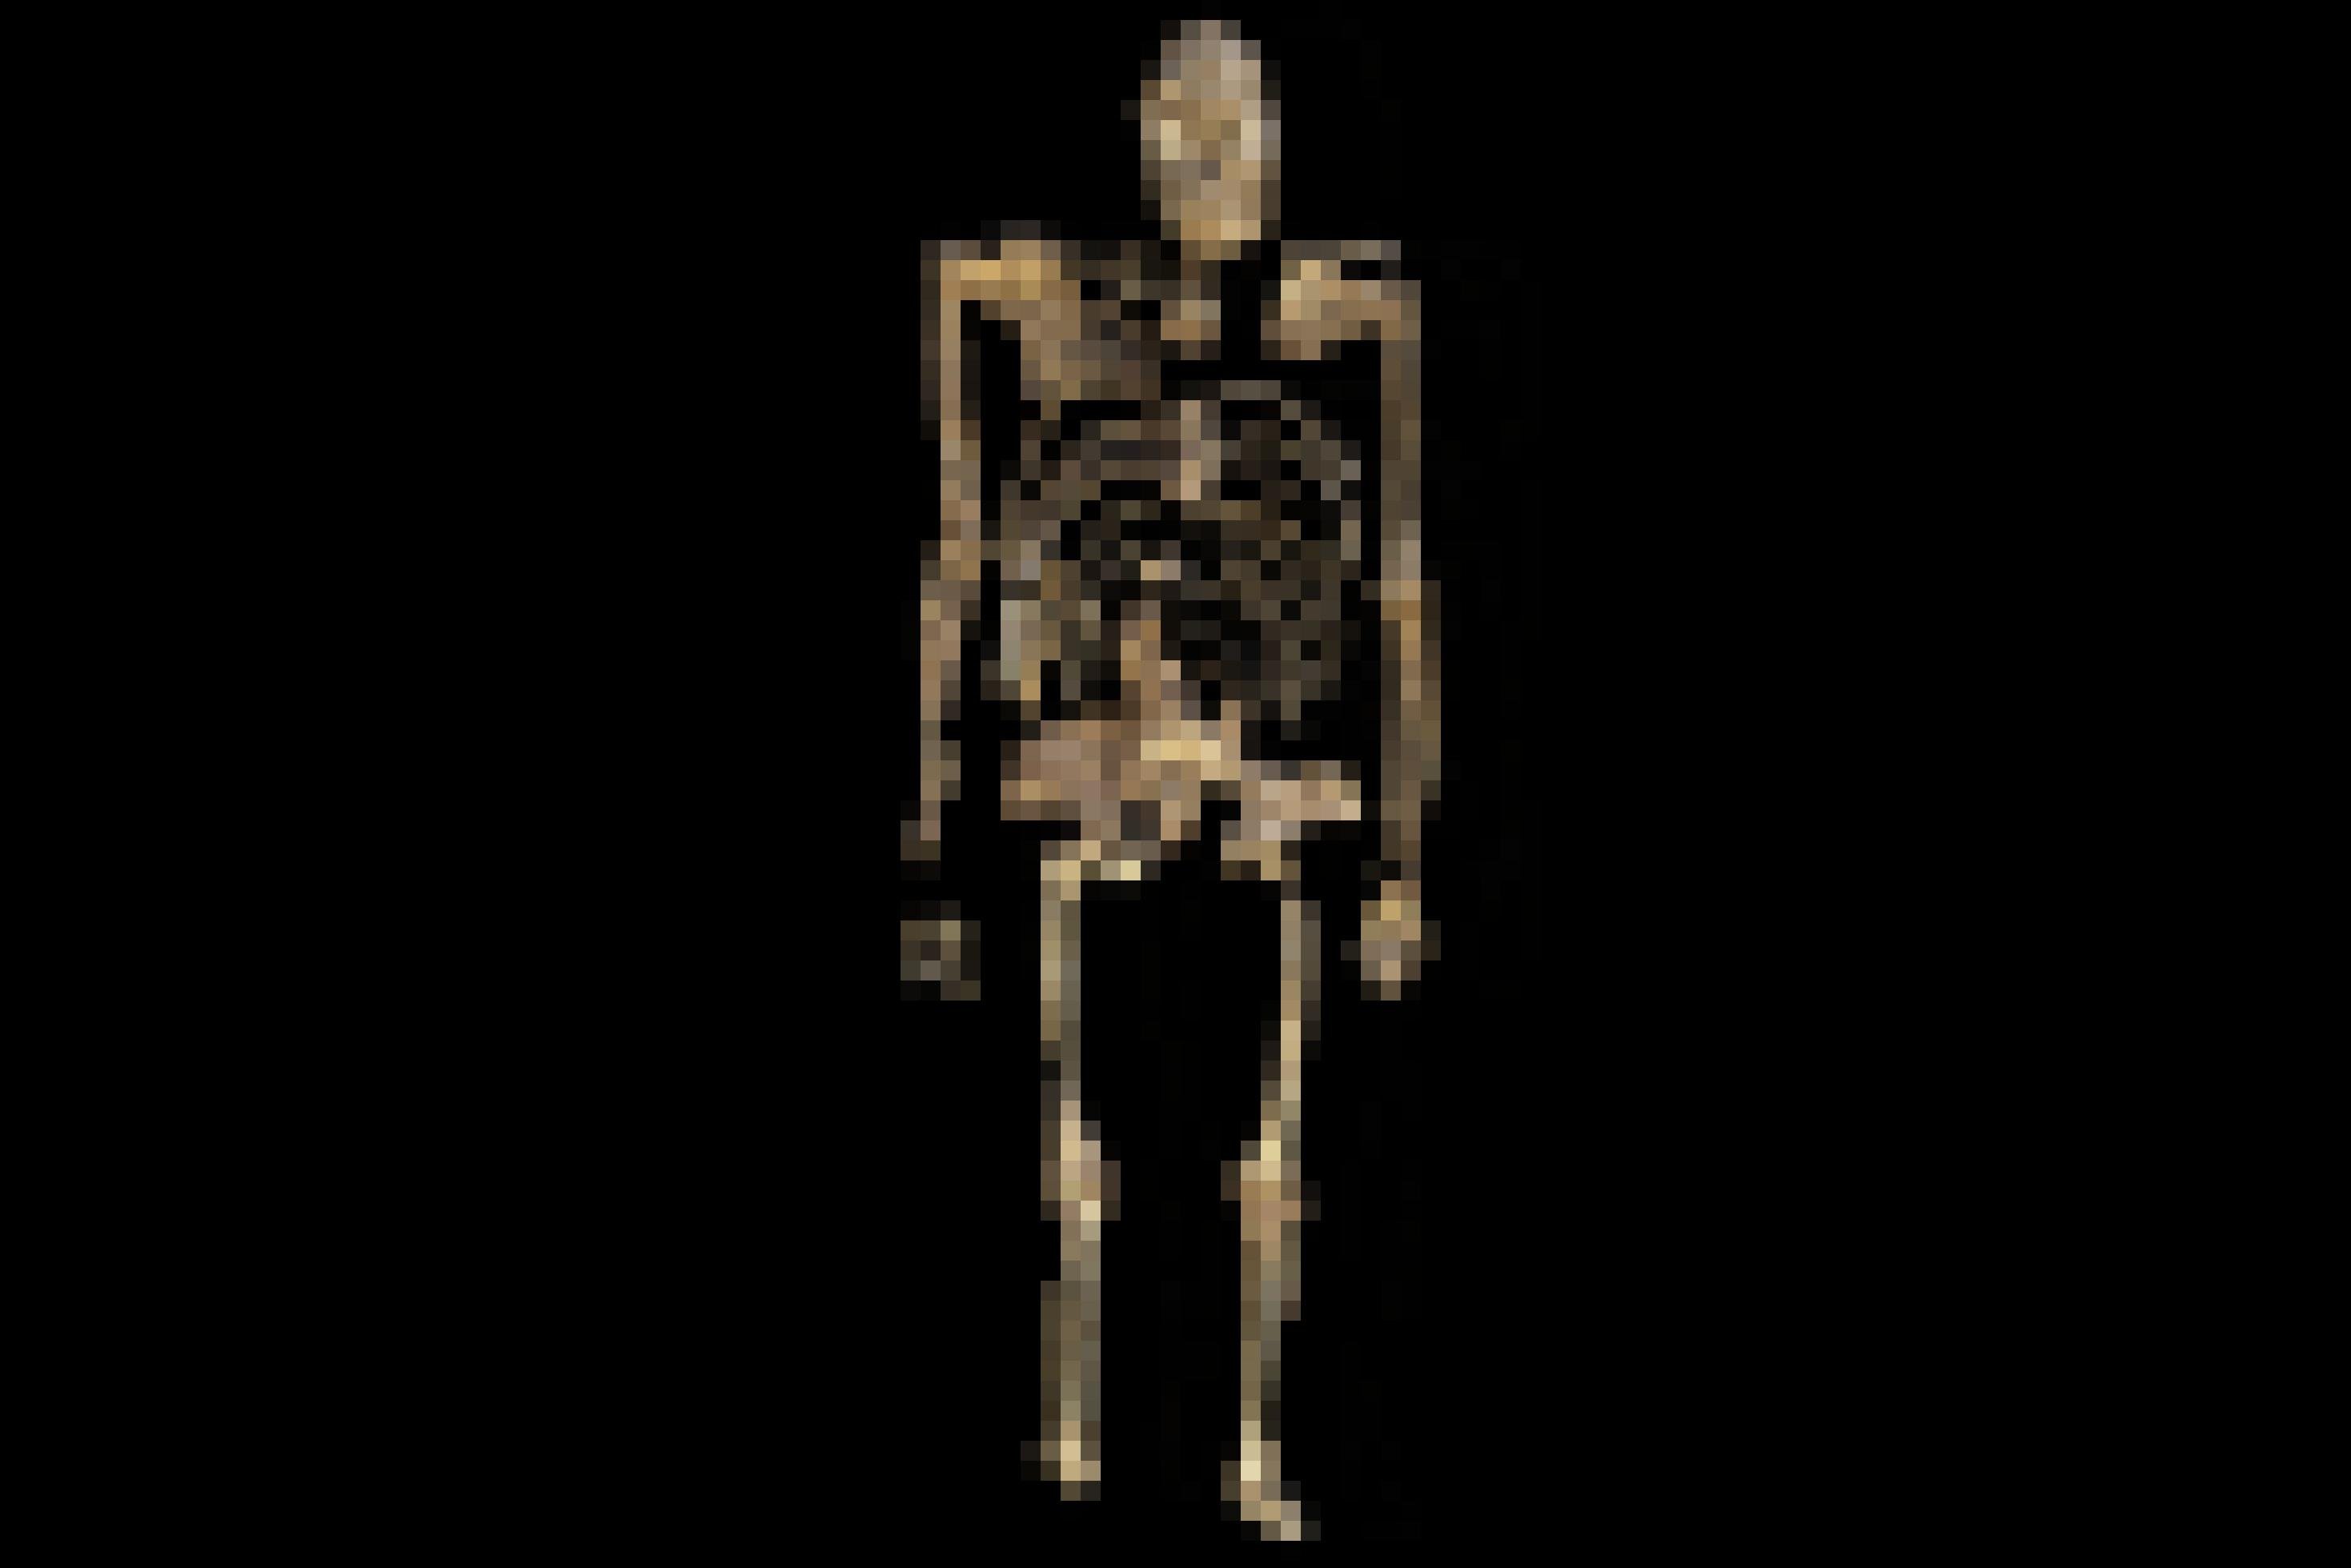 Vor schwarzem Hintergrund ist ein in aufrechter Position gezeigtes, weitgehend erhaltenes fossiles Skelett zu sehen, das wie eine Mischung zwischen Affe und Mensch wirkt.